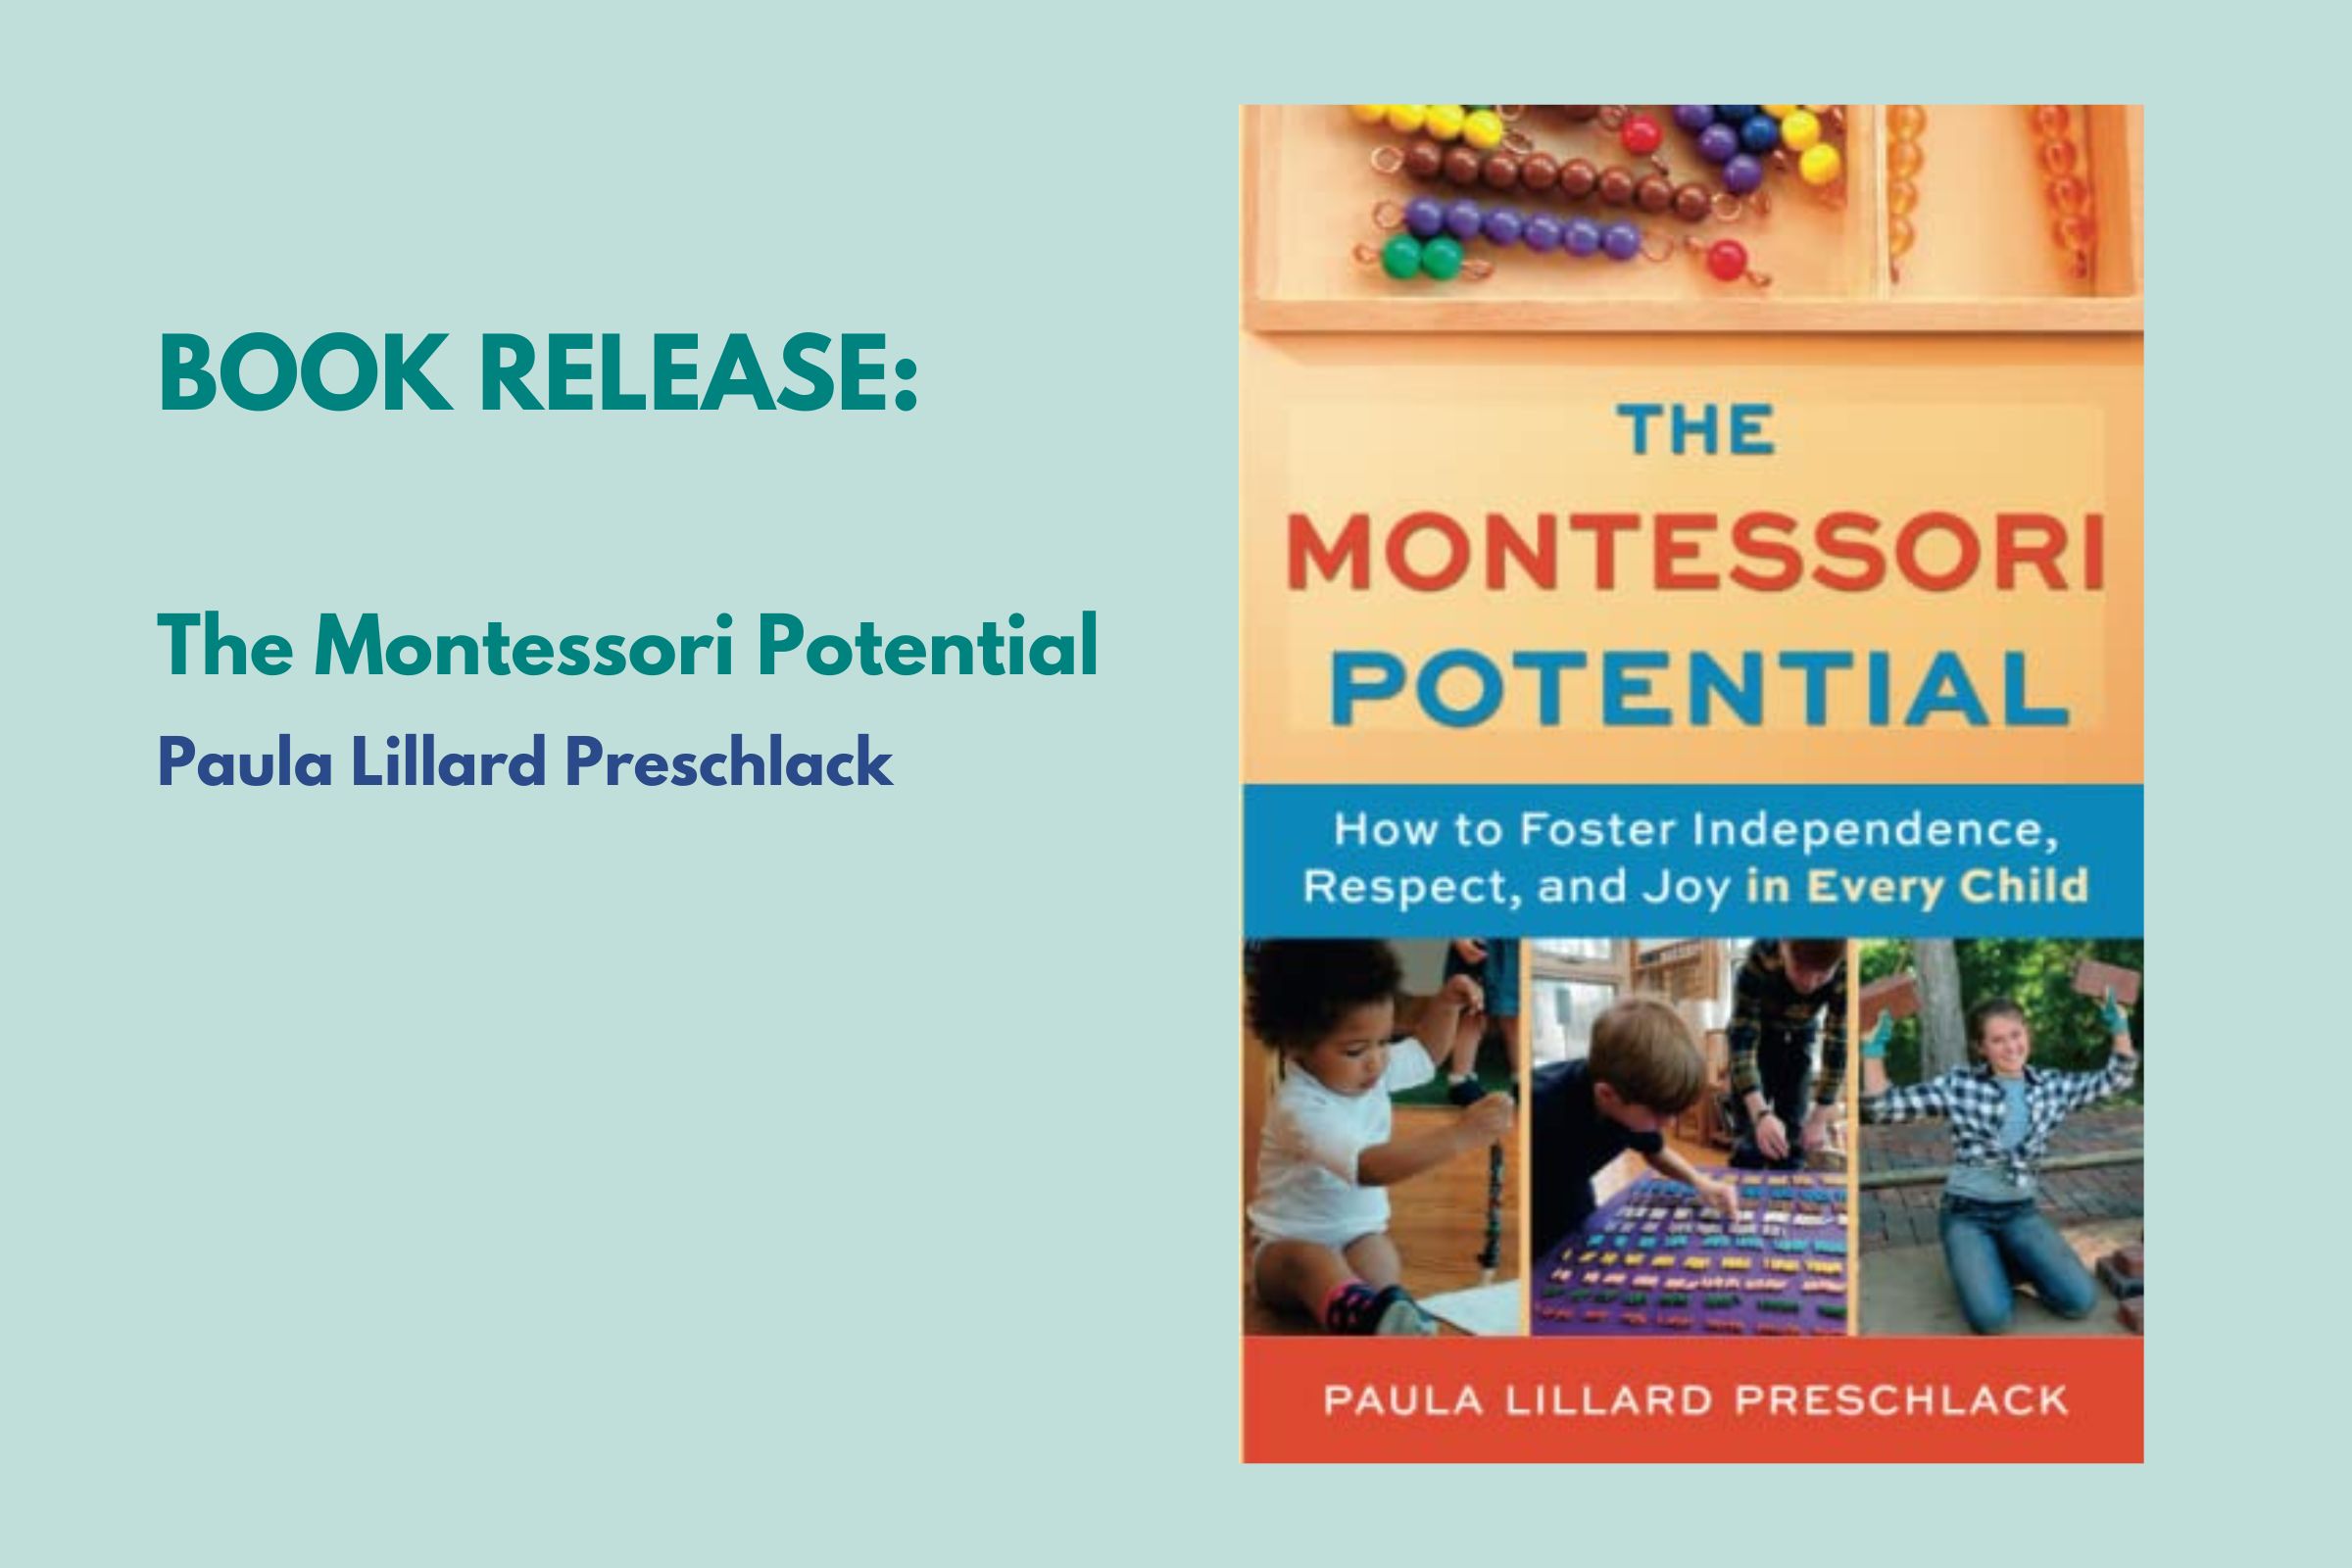 Book Release: The Montessori Potential